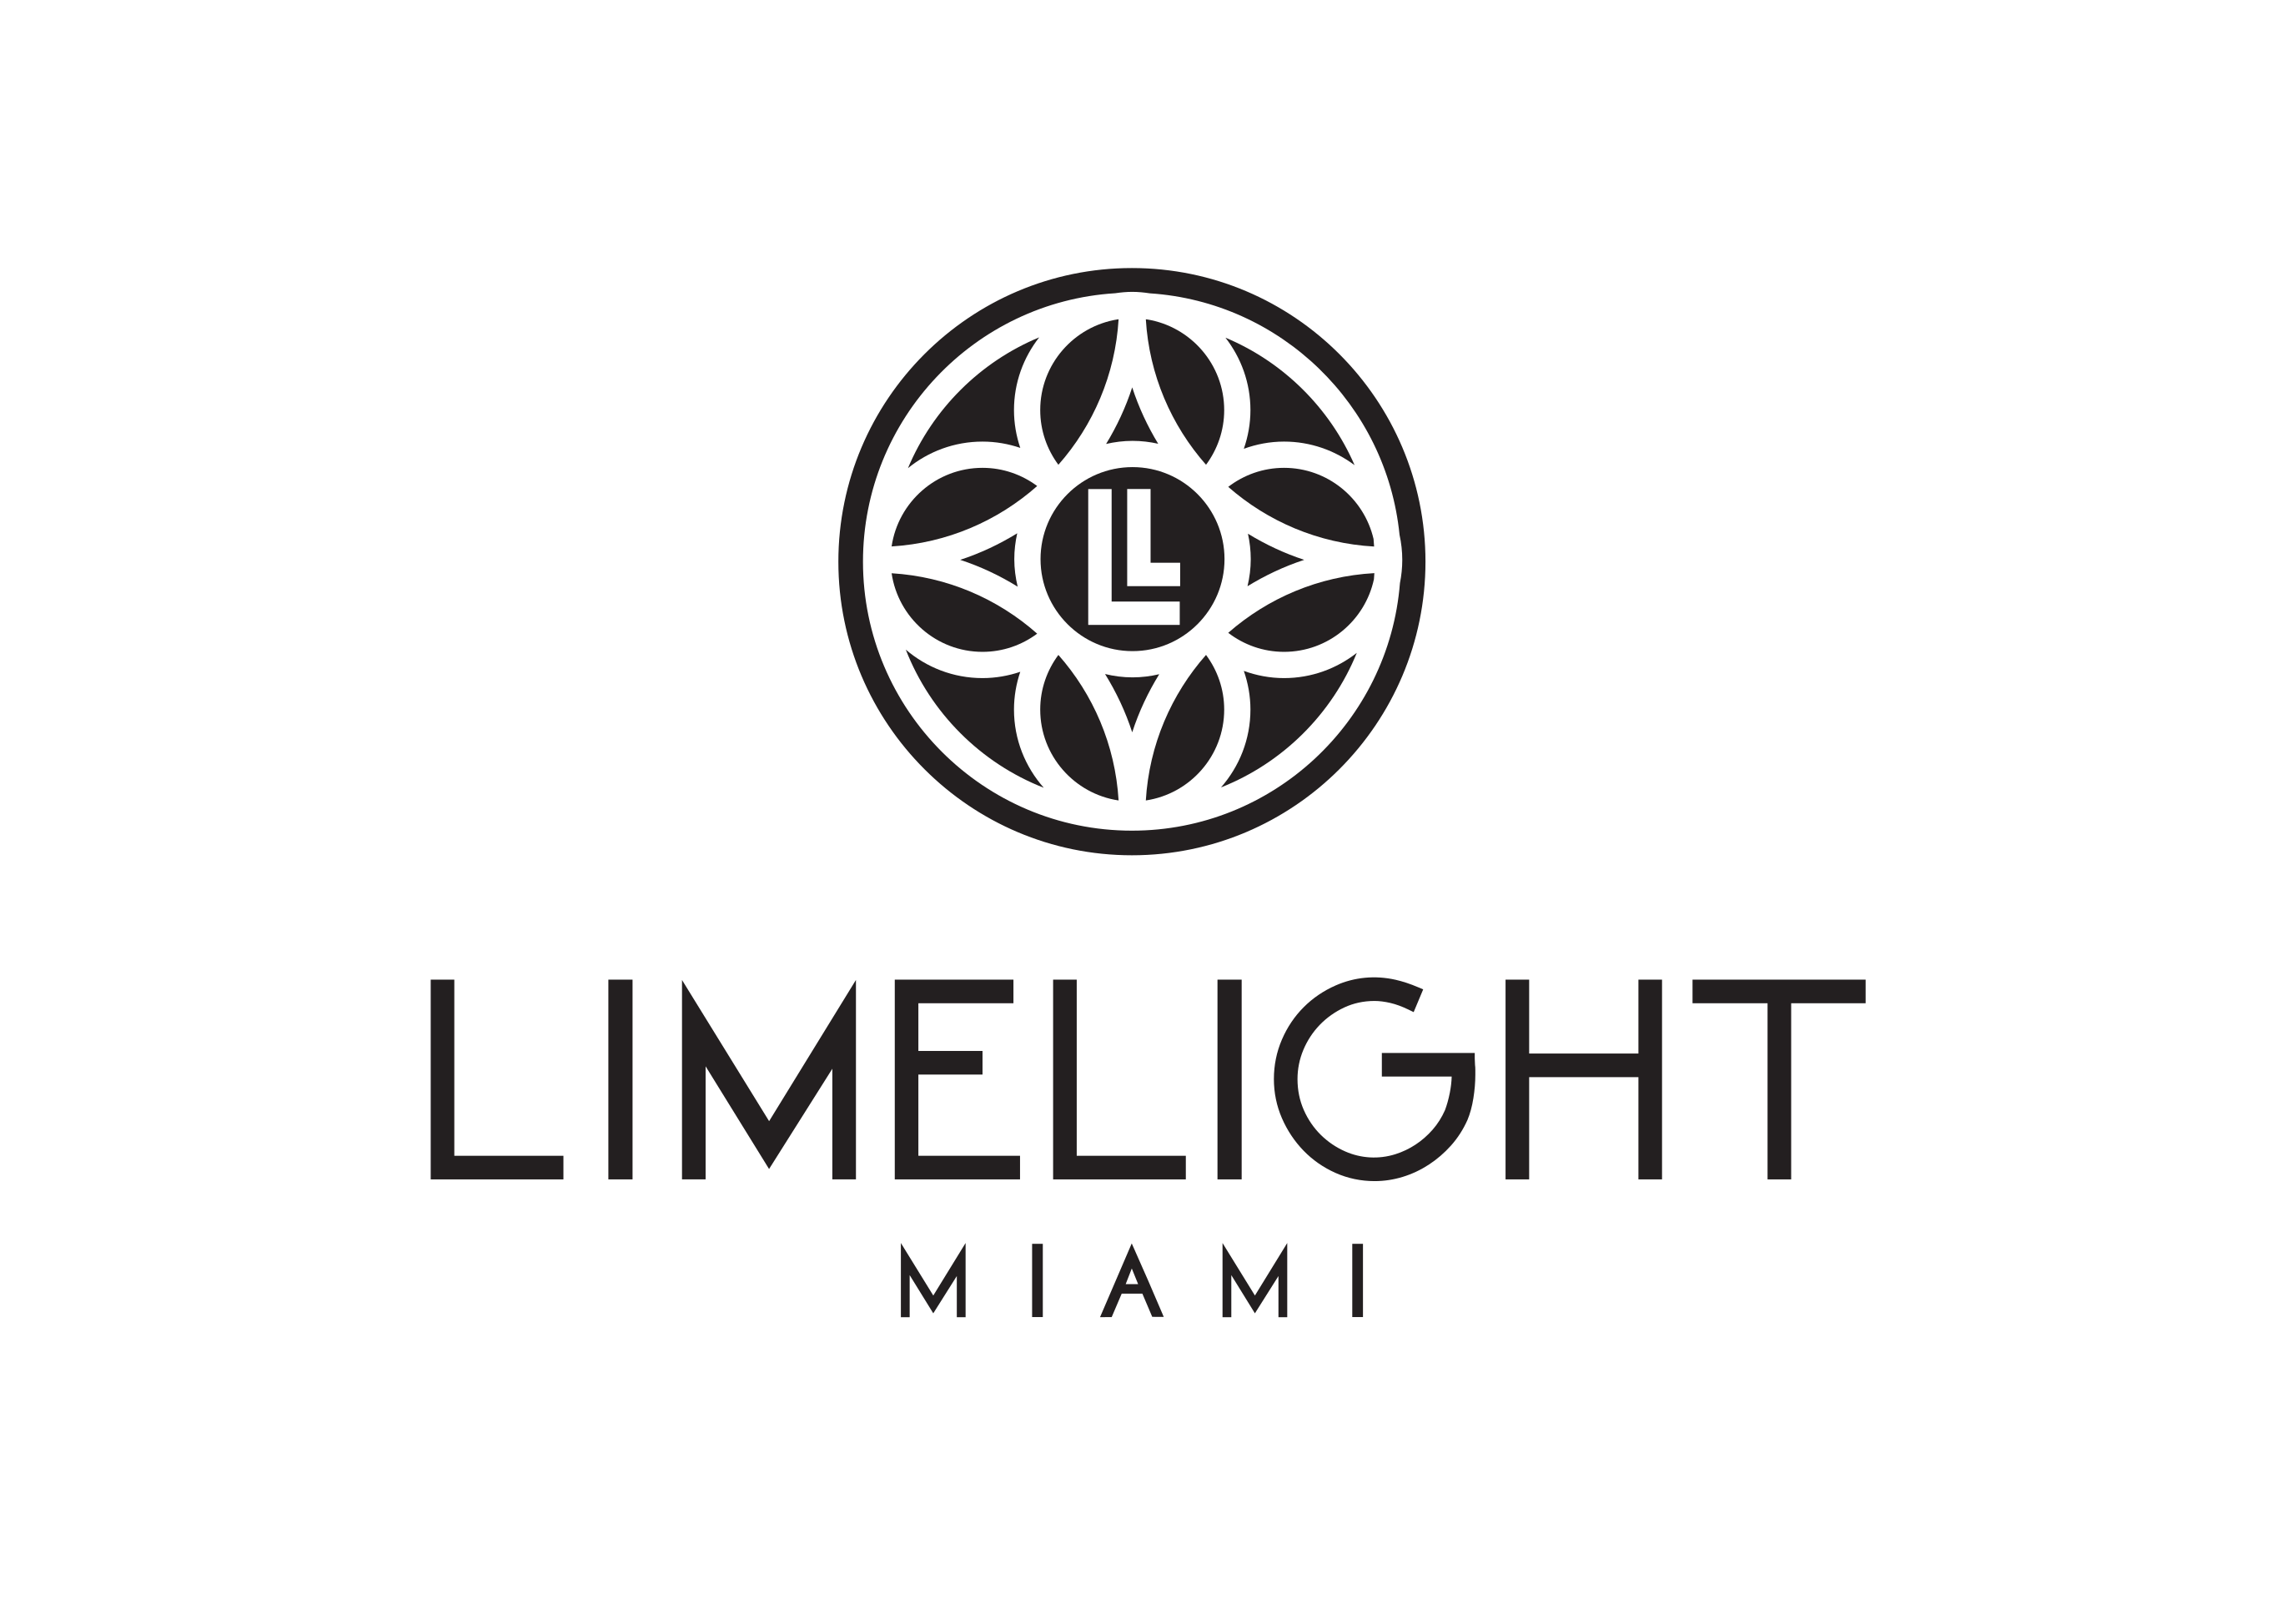 LimeLight Miami